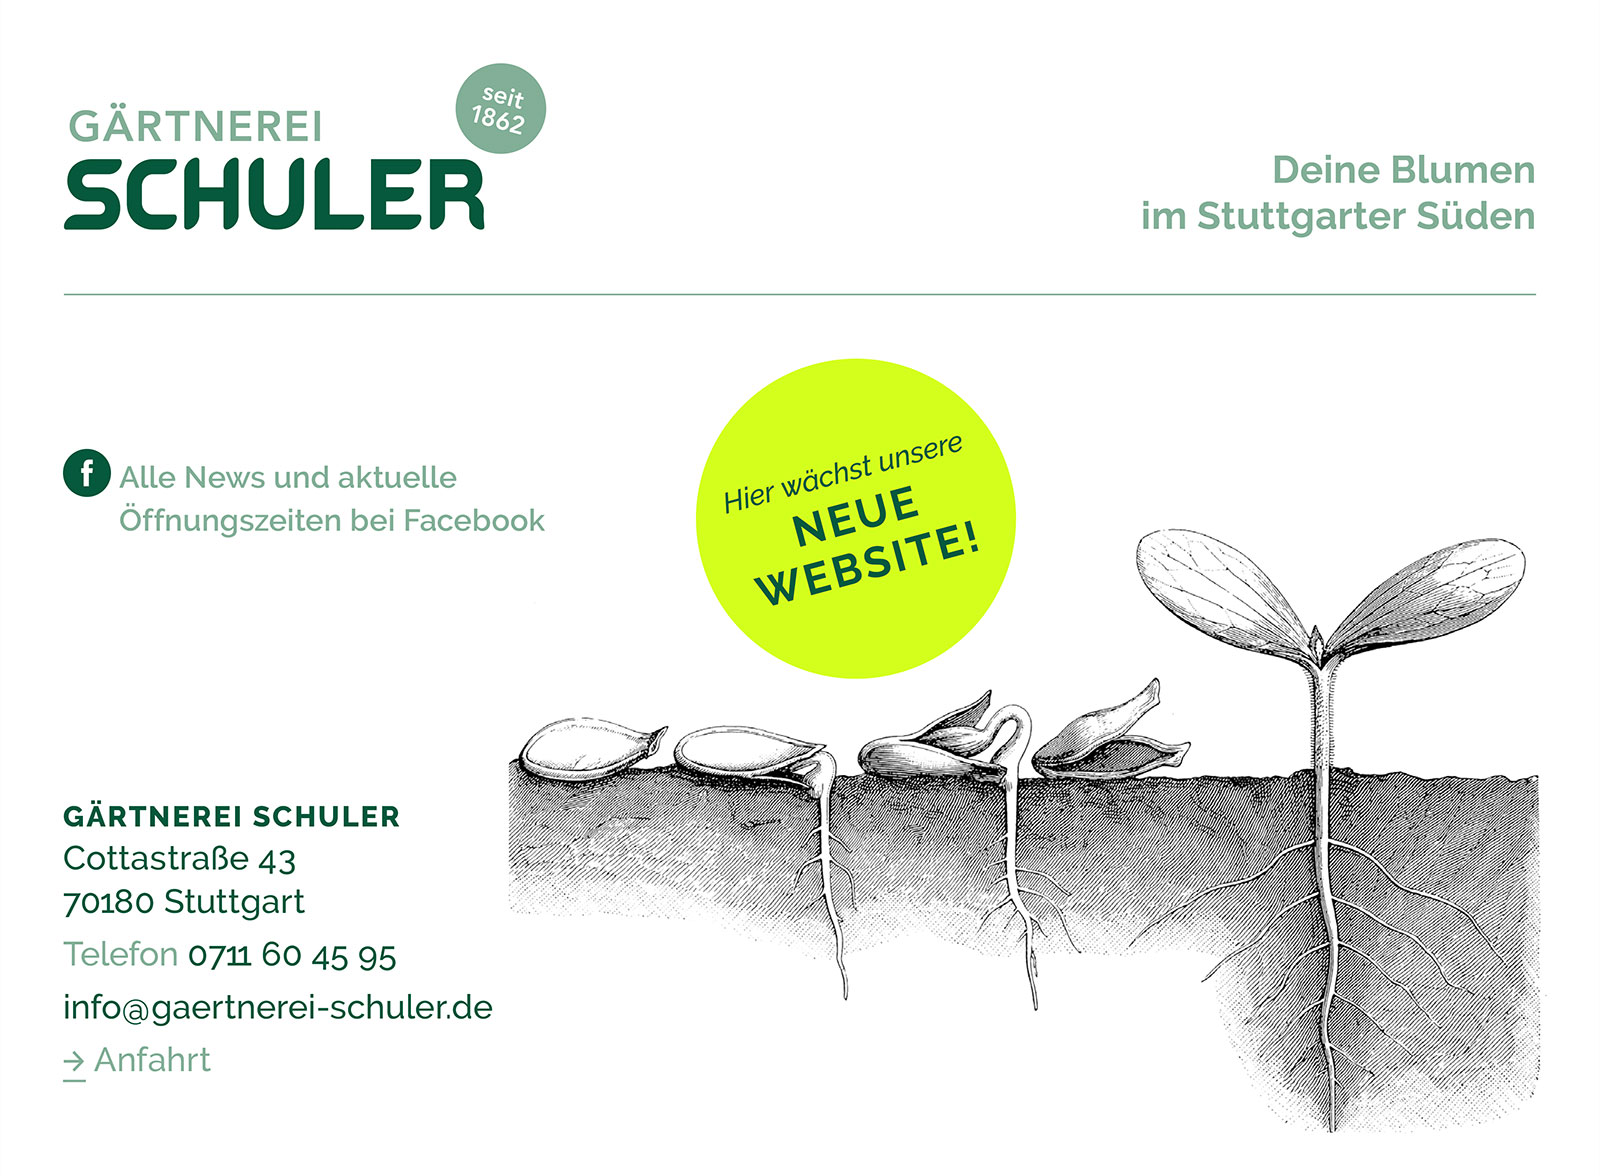 Seit 1862: Gärtnerei Schuler, Cottastraße 43, 70180 Stuttgart, Deine Blumen im Stuttgarter Süden, Hier wächst unsere NEUE WEBSITE!